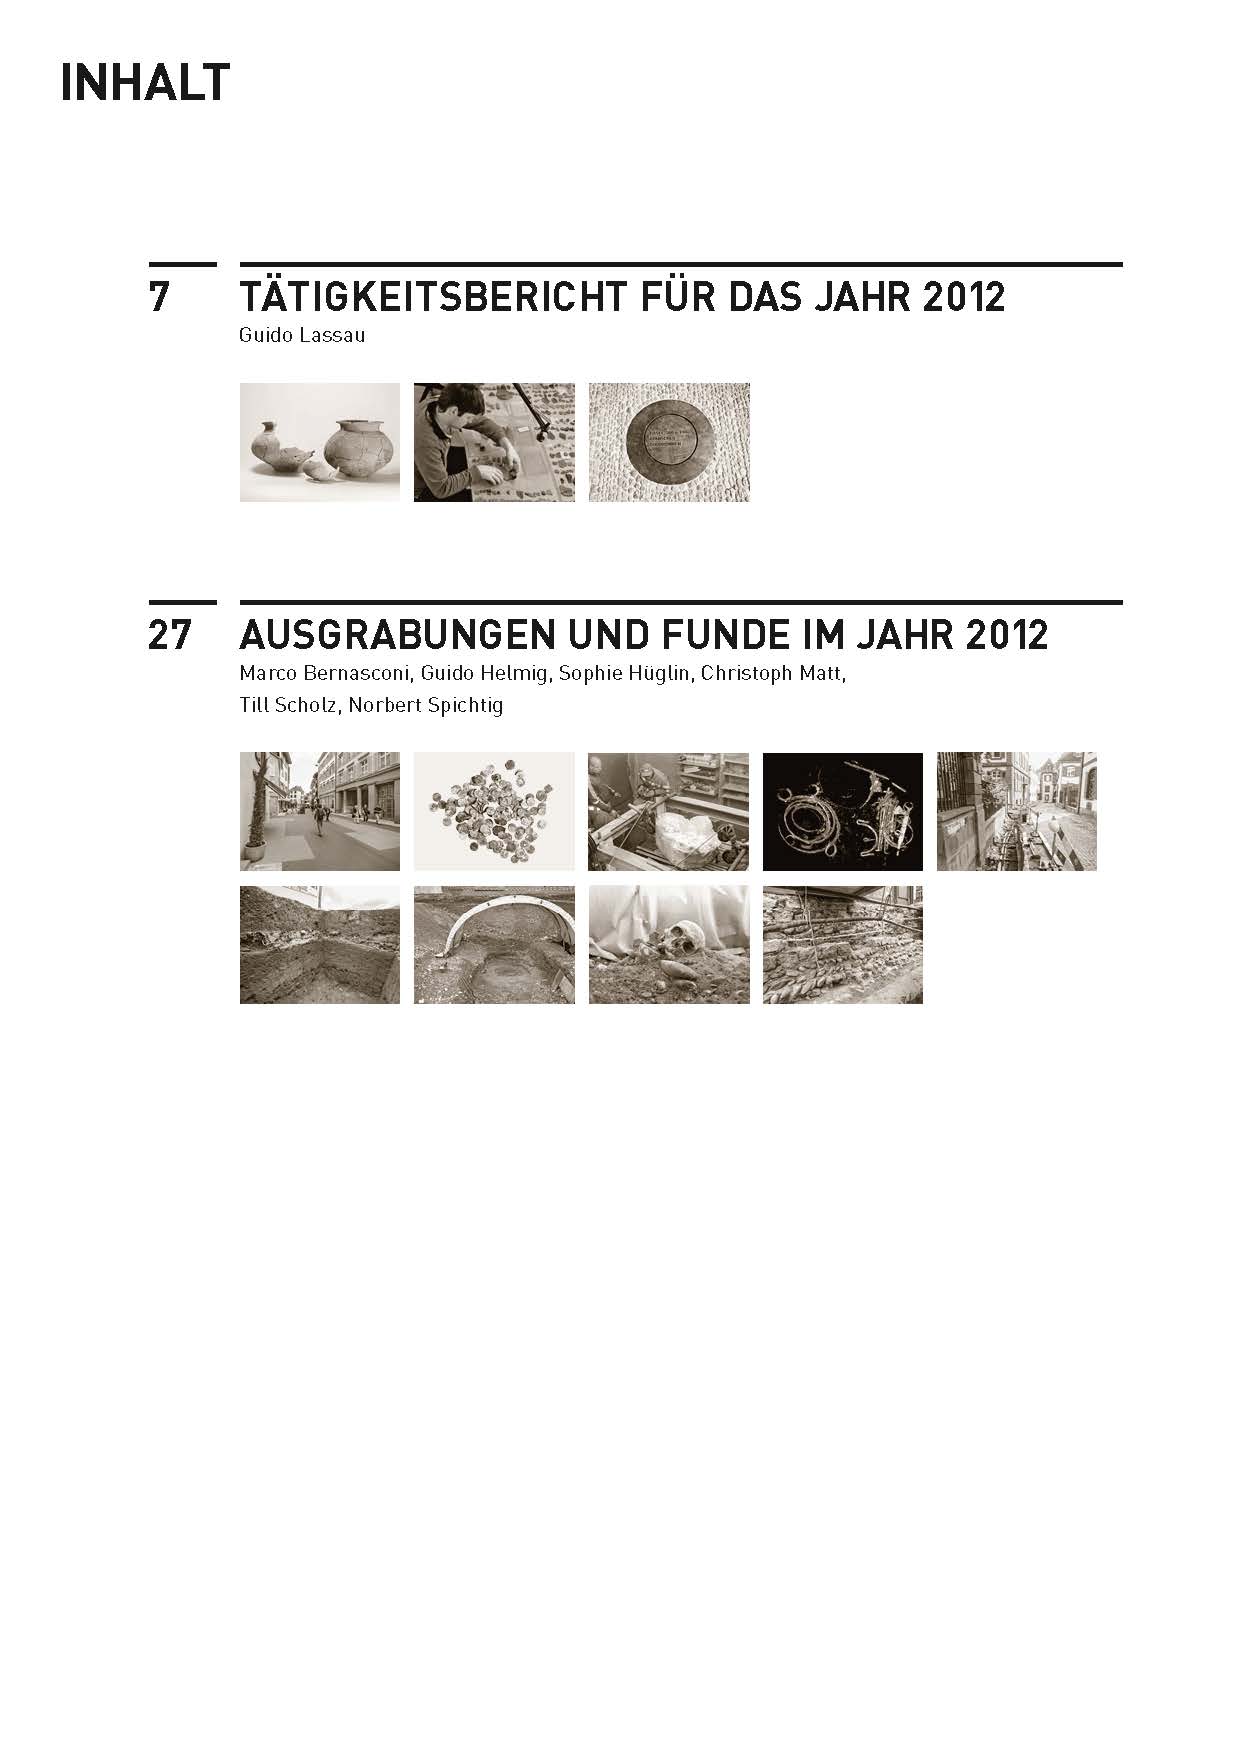 Inhaltsverzeichnis des Jahresberichts